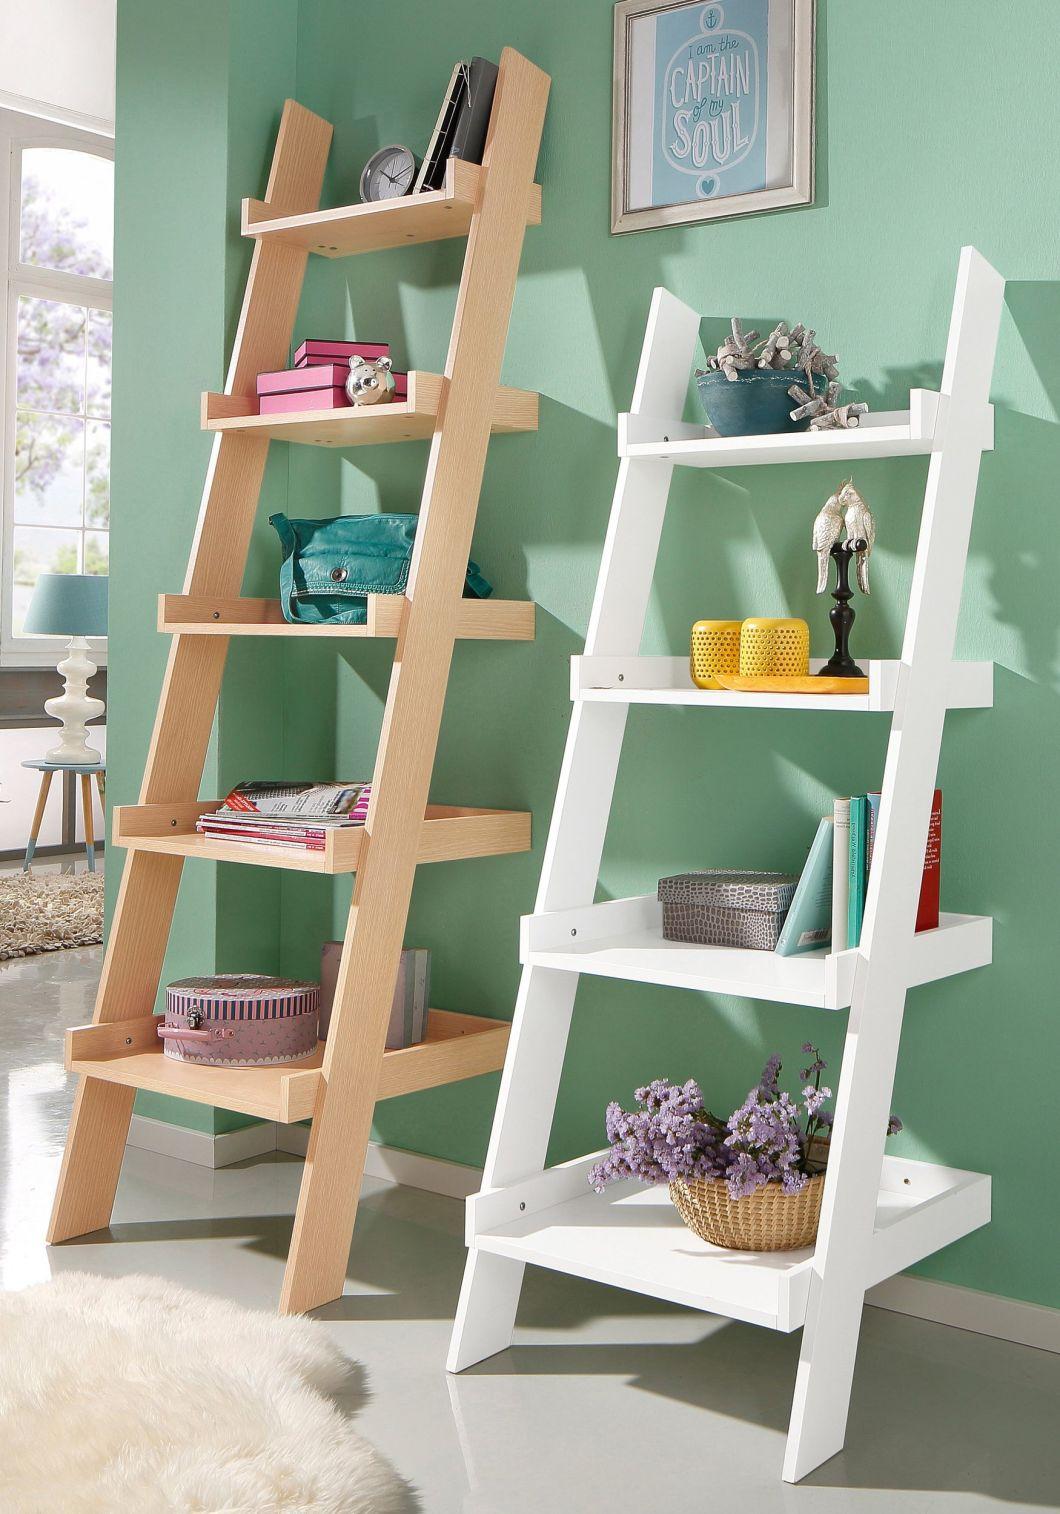 White 4 Story Wood Bookshelf, Ladder Type Bookcase